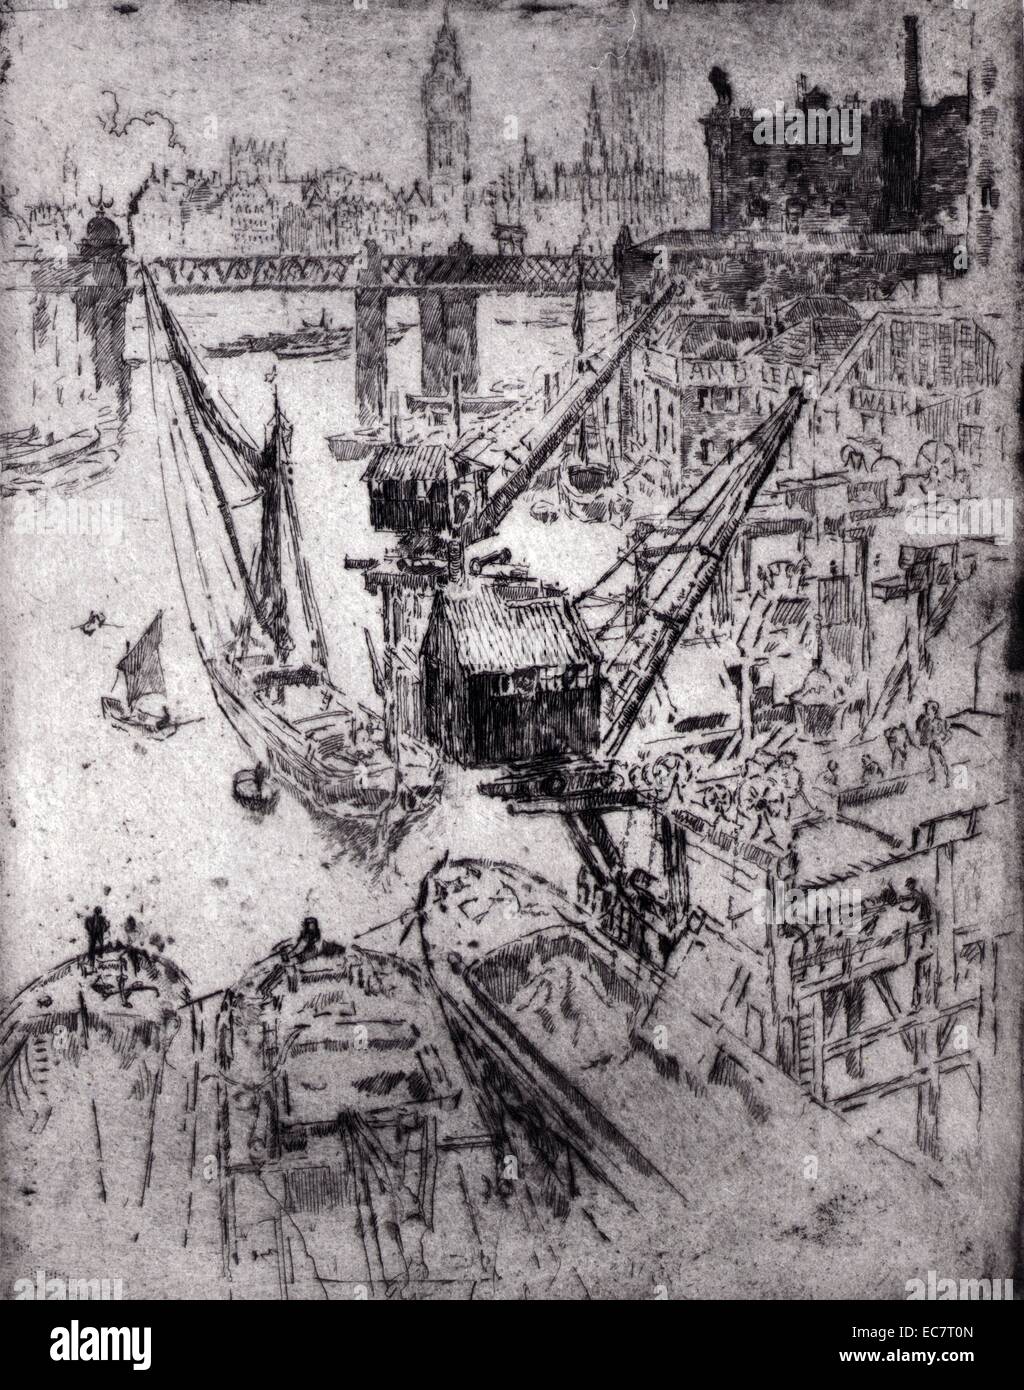 Vue d'impression a des travaux à Waterloo, sur la rivière Thames travaille à Waterloo par Joseph Pennell, 1857-1926 Banque D'Images